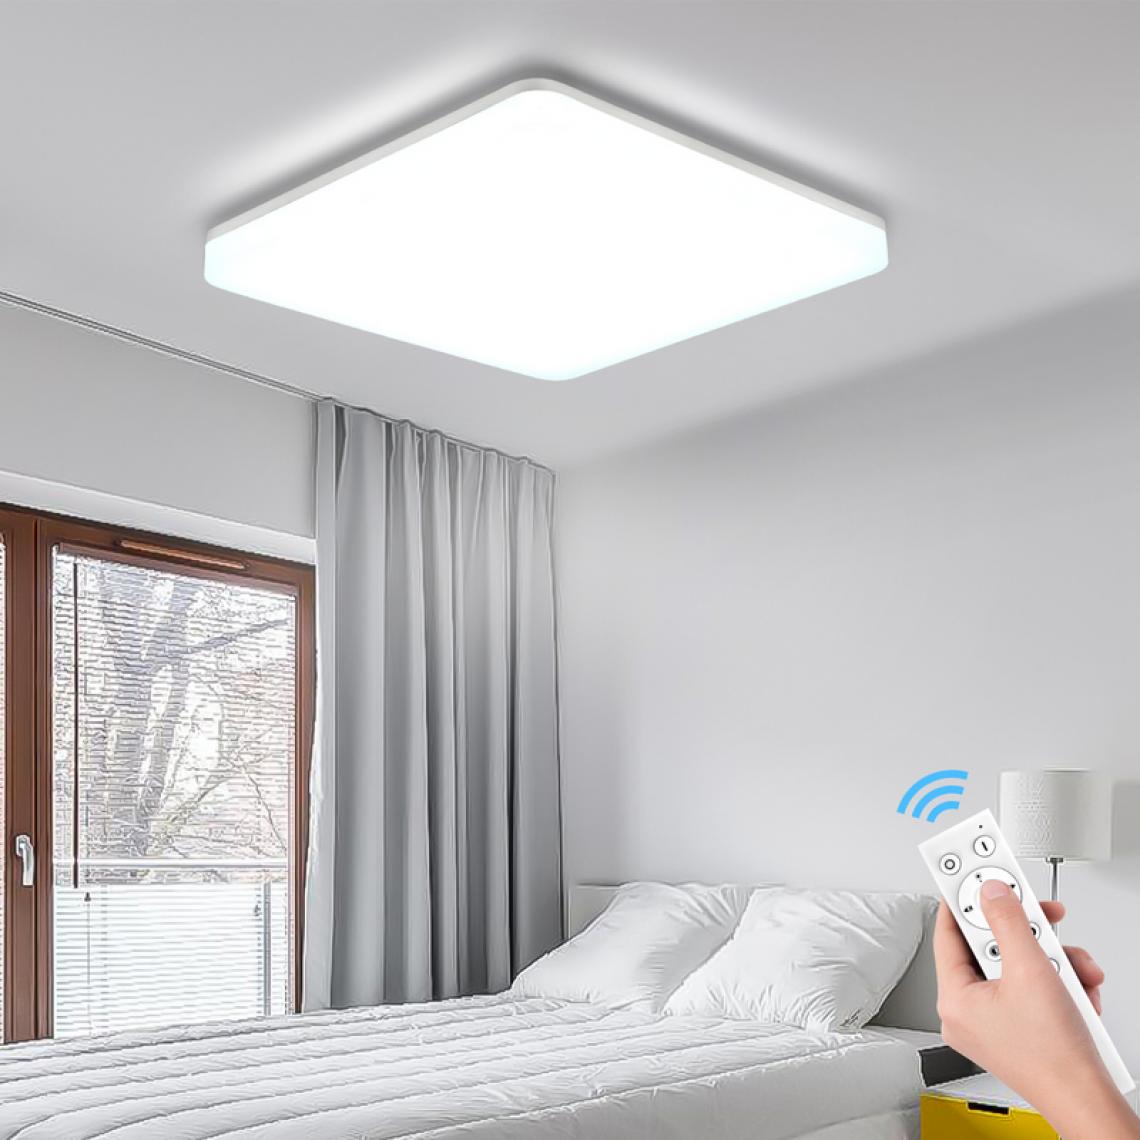 Einfeben - Plafonnier dimmable salon IP54 couloir lumière du jour plafonnier LED cuisine 24W - Lampe connectée